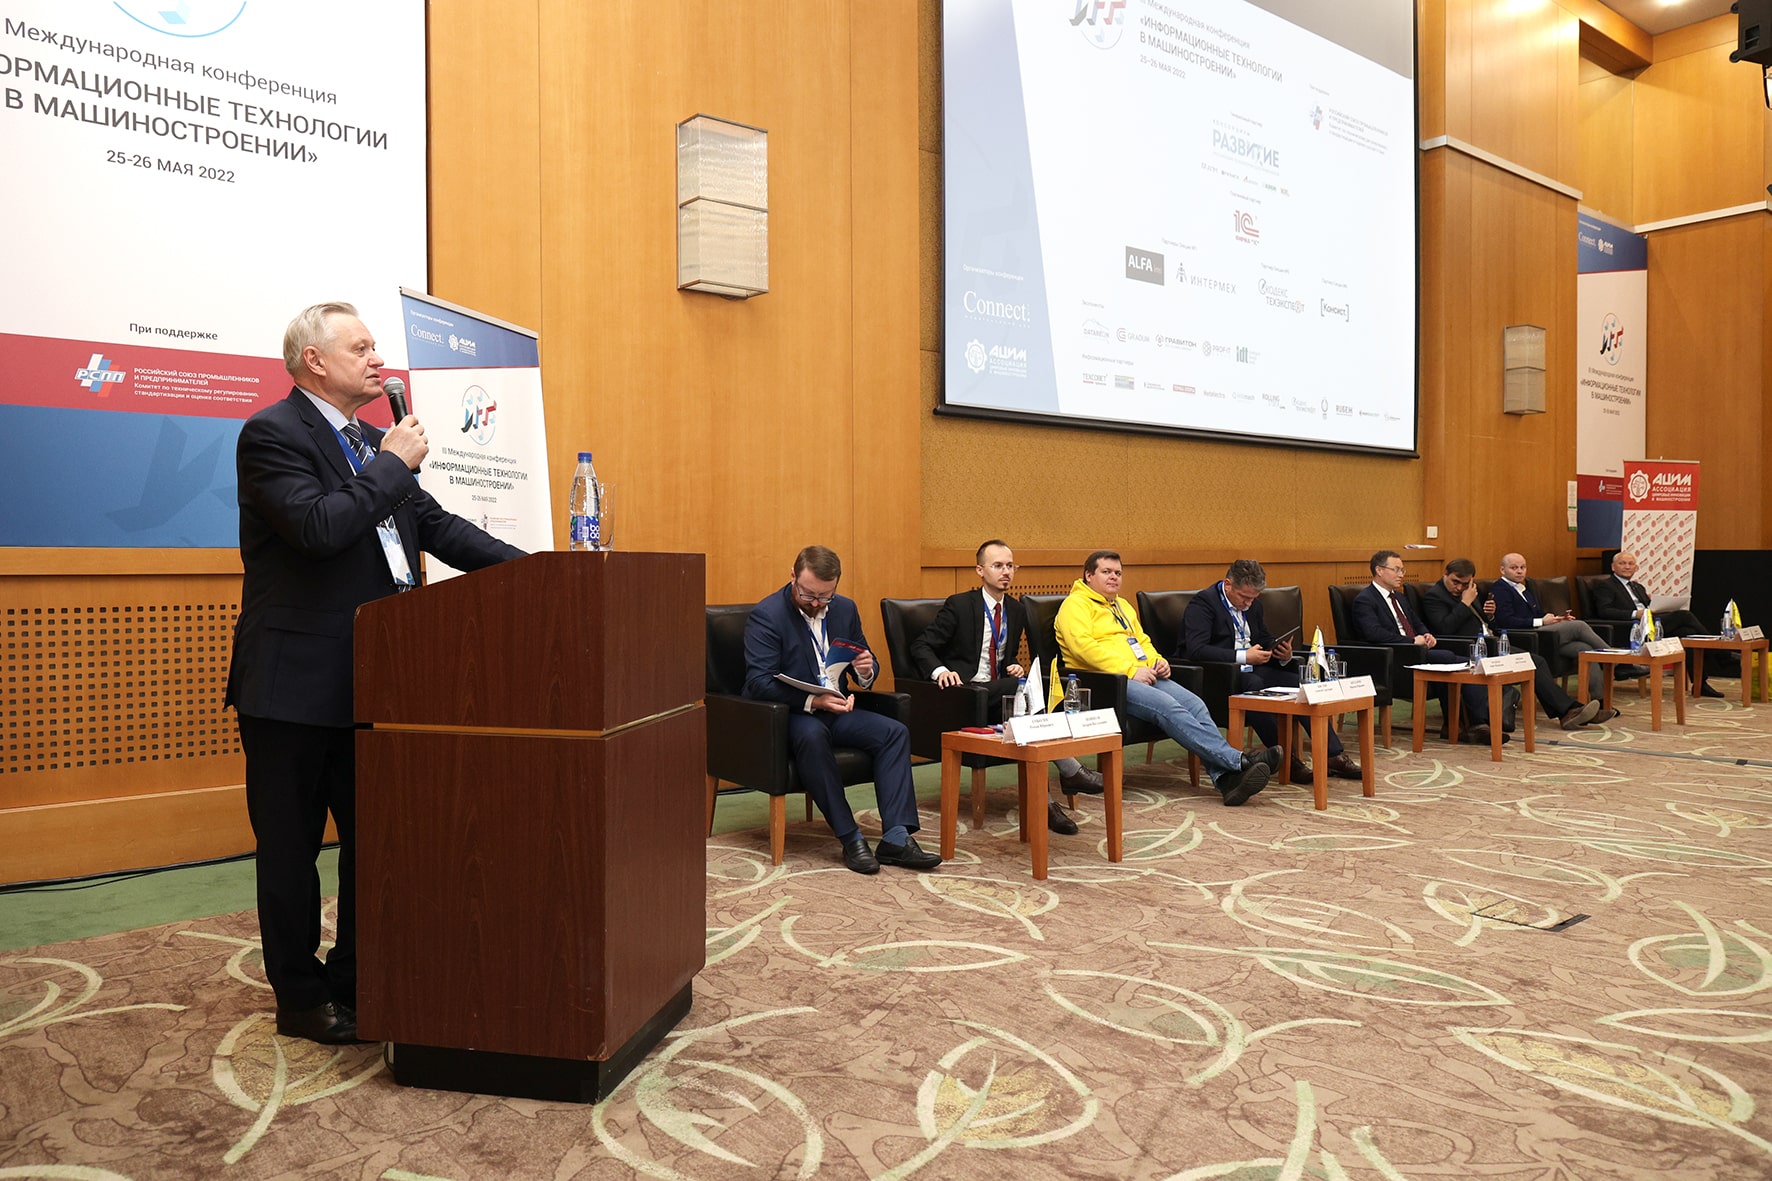 Всероссийская конференция Информационные технологии в машиностроении 2022